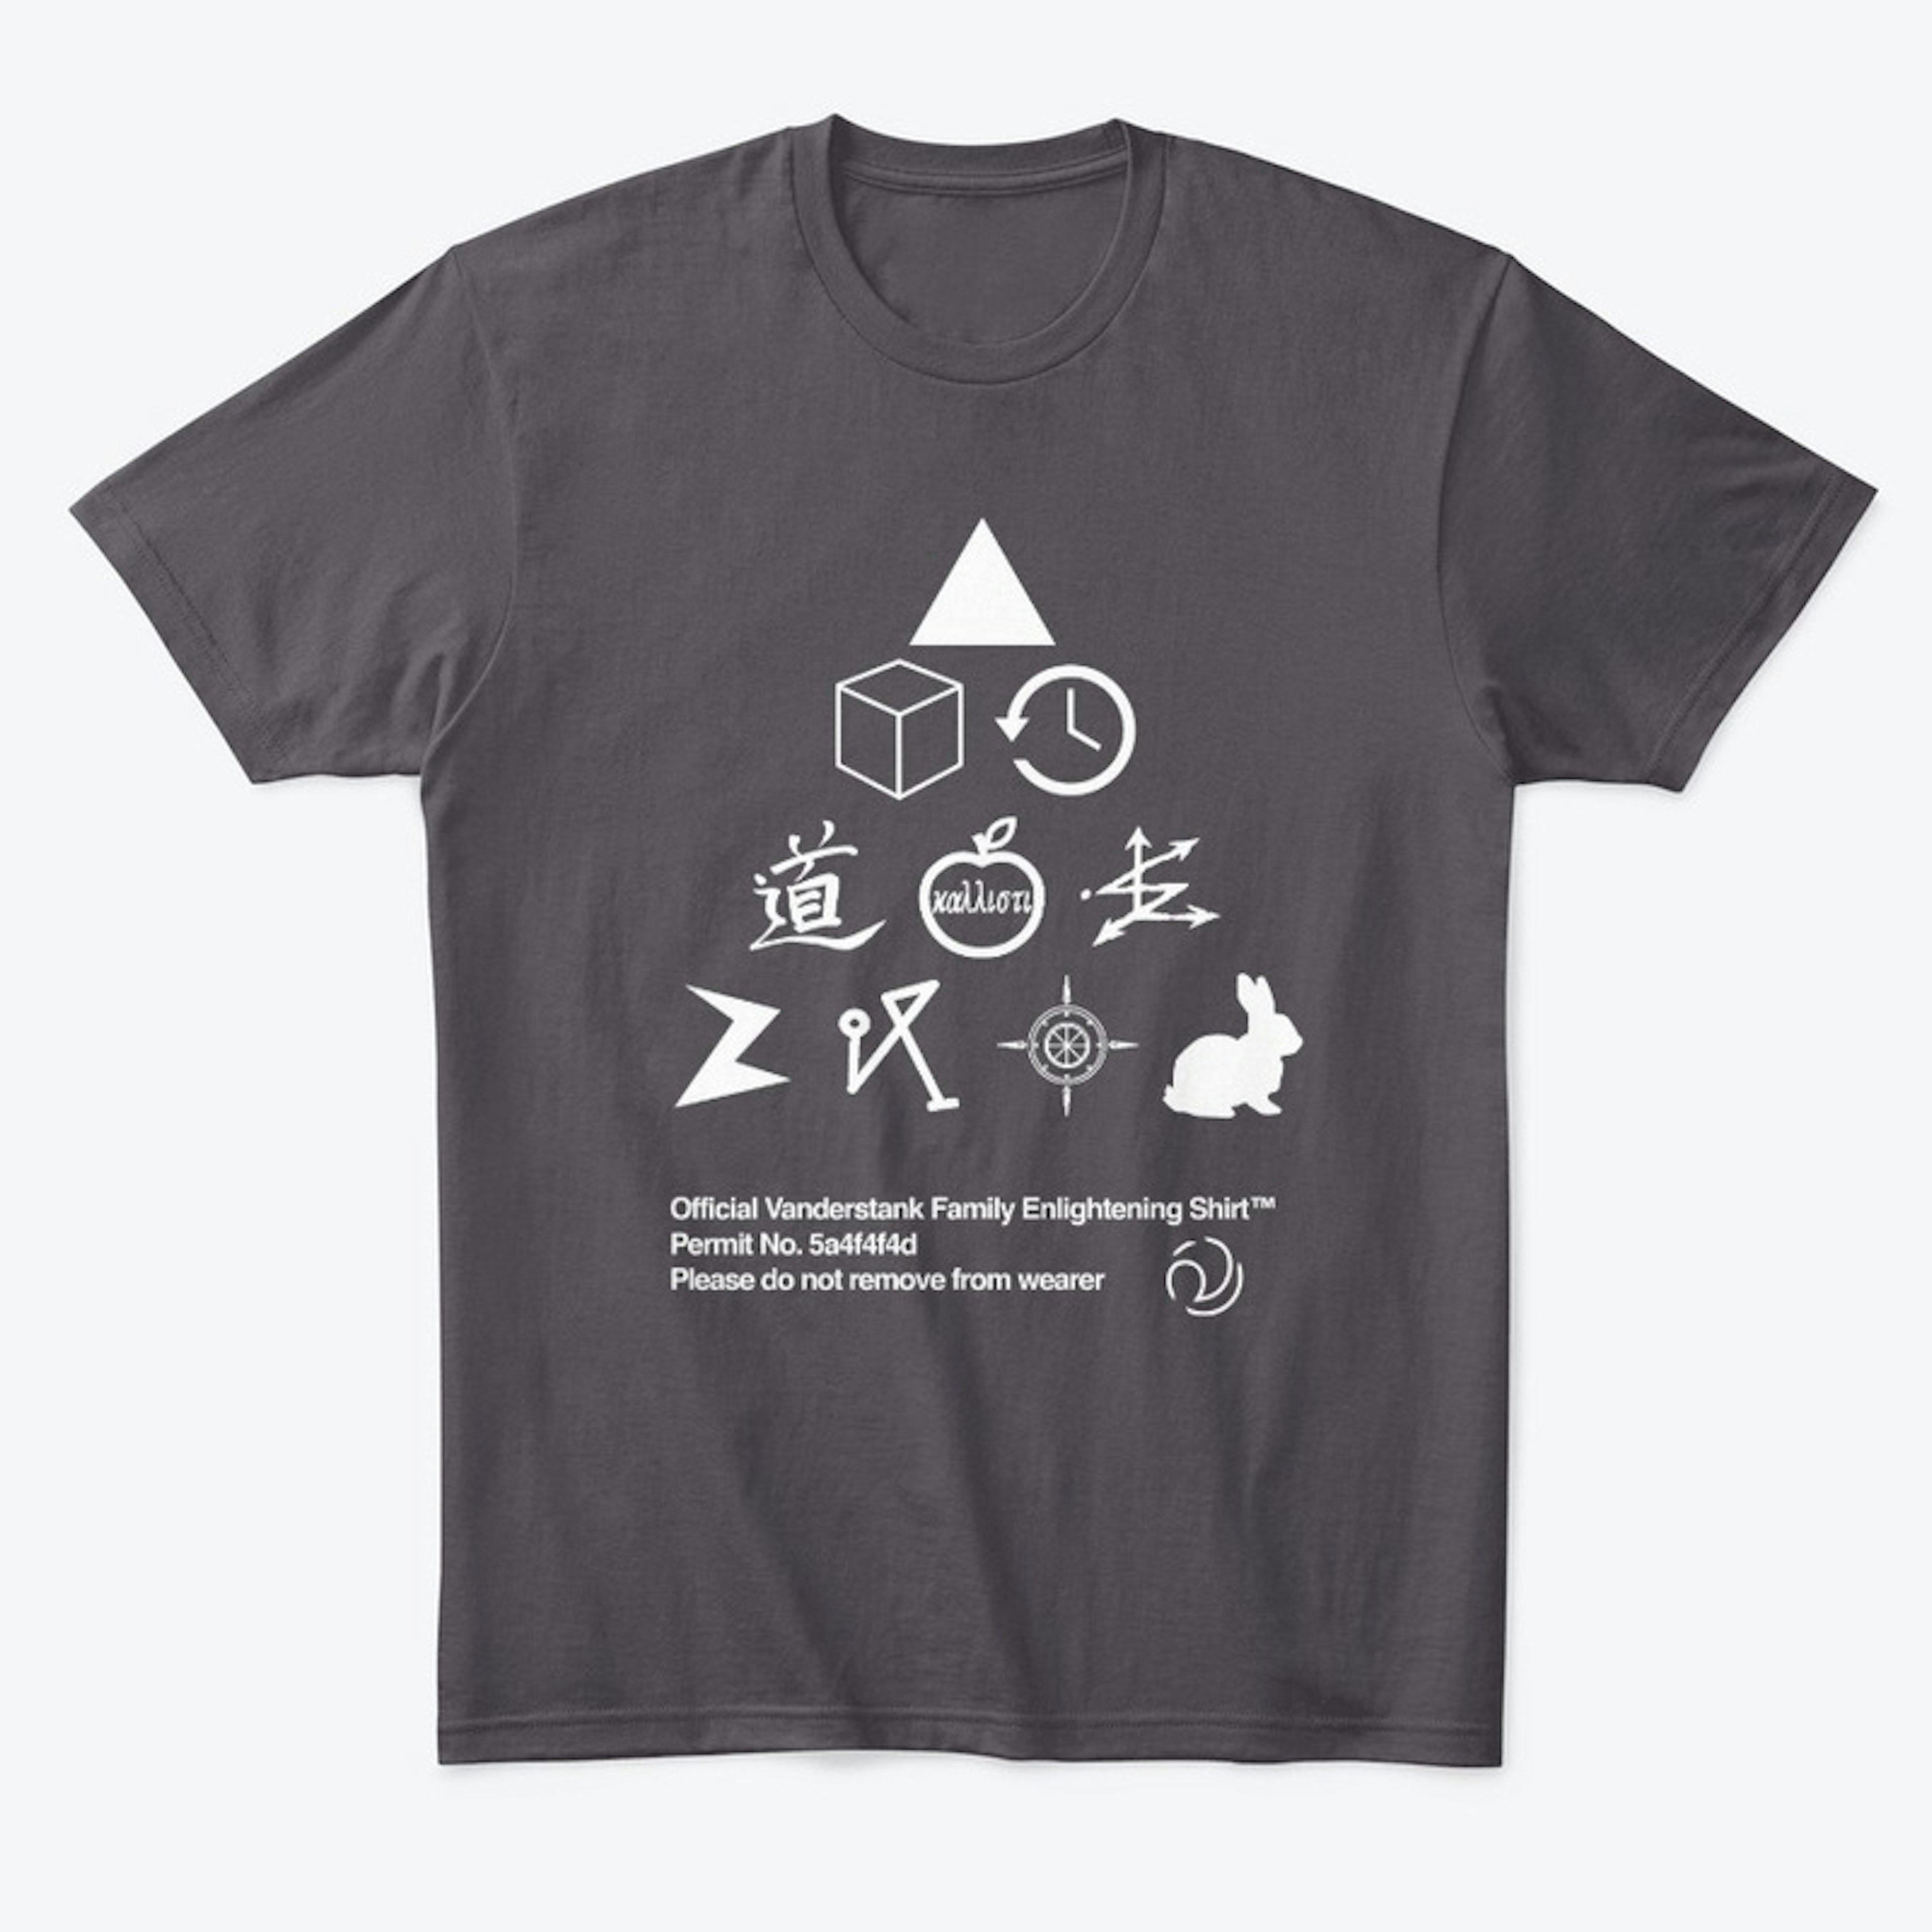 Official Enlightening Shirt™